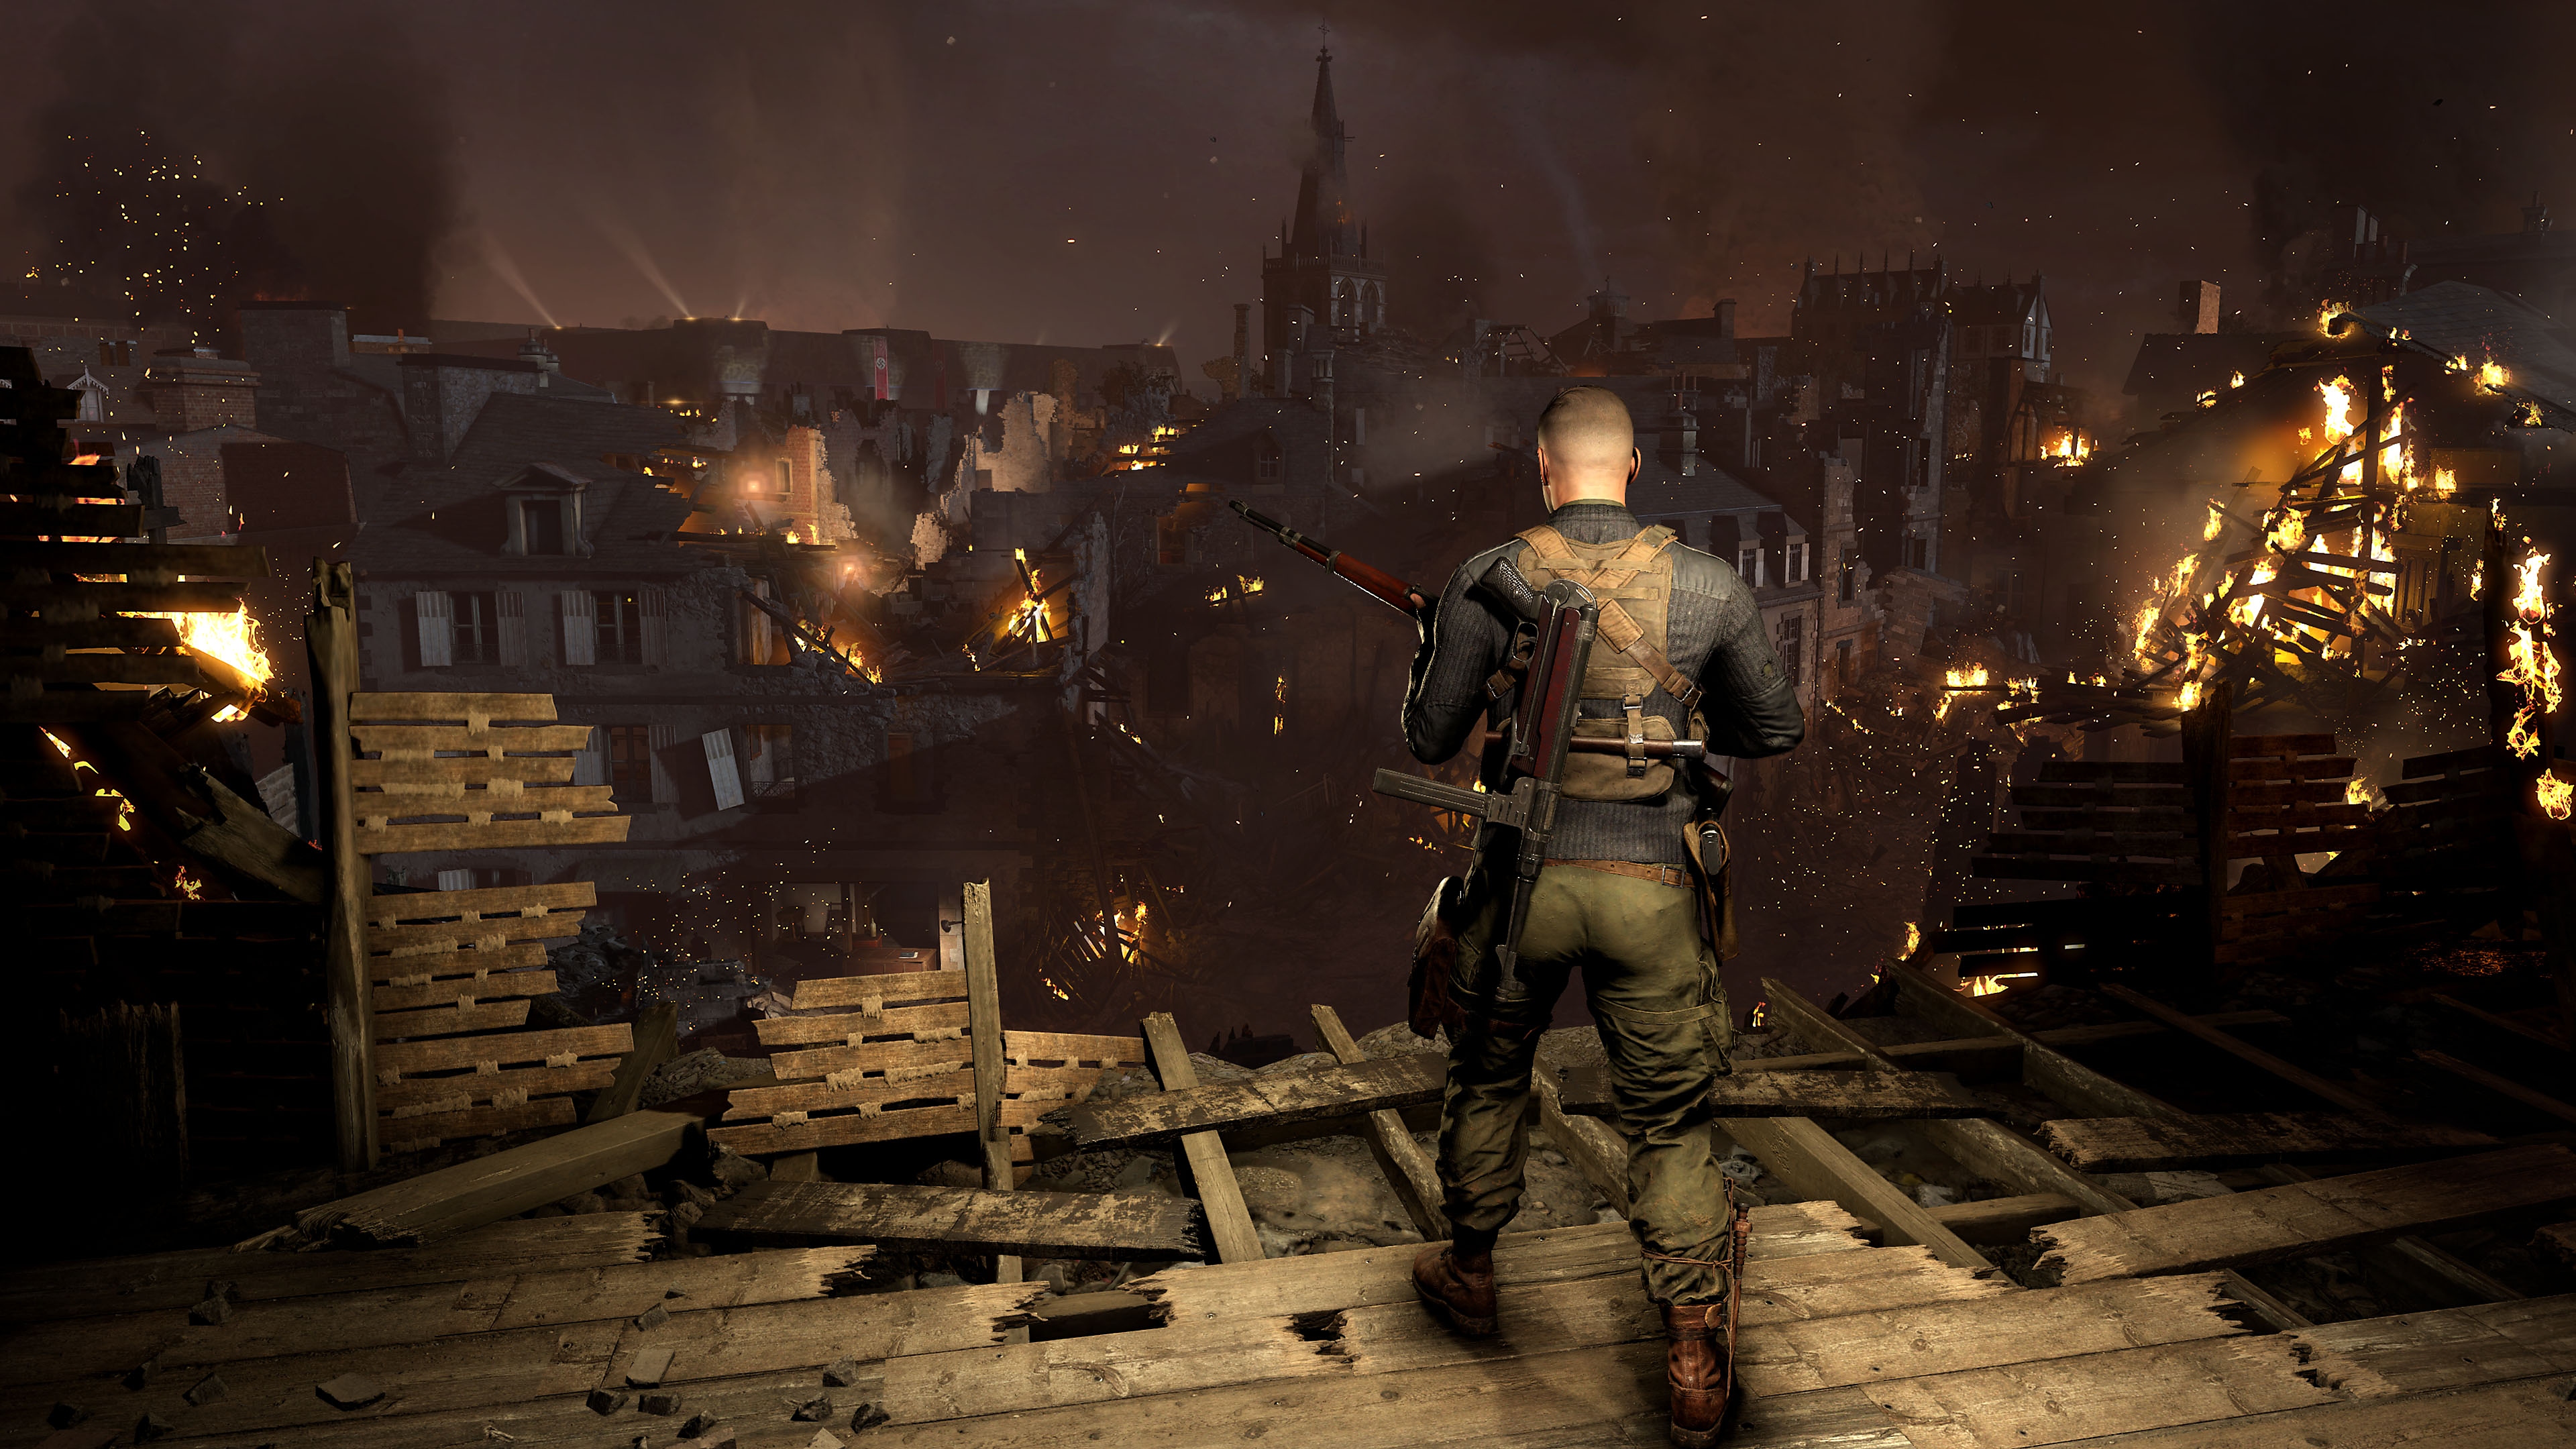 Sniper Elite 5 - Captura de tela mostrando um personagem olhando uma cidade com construções em chamas